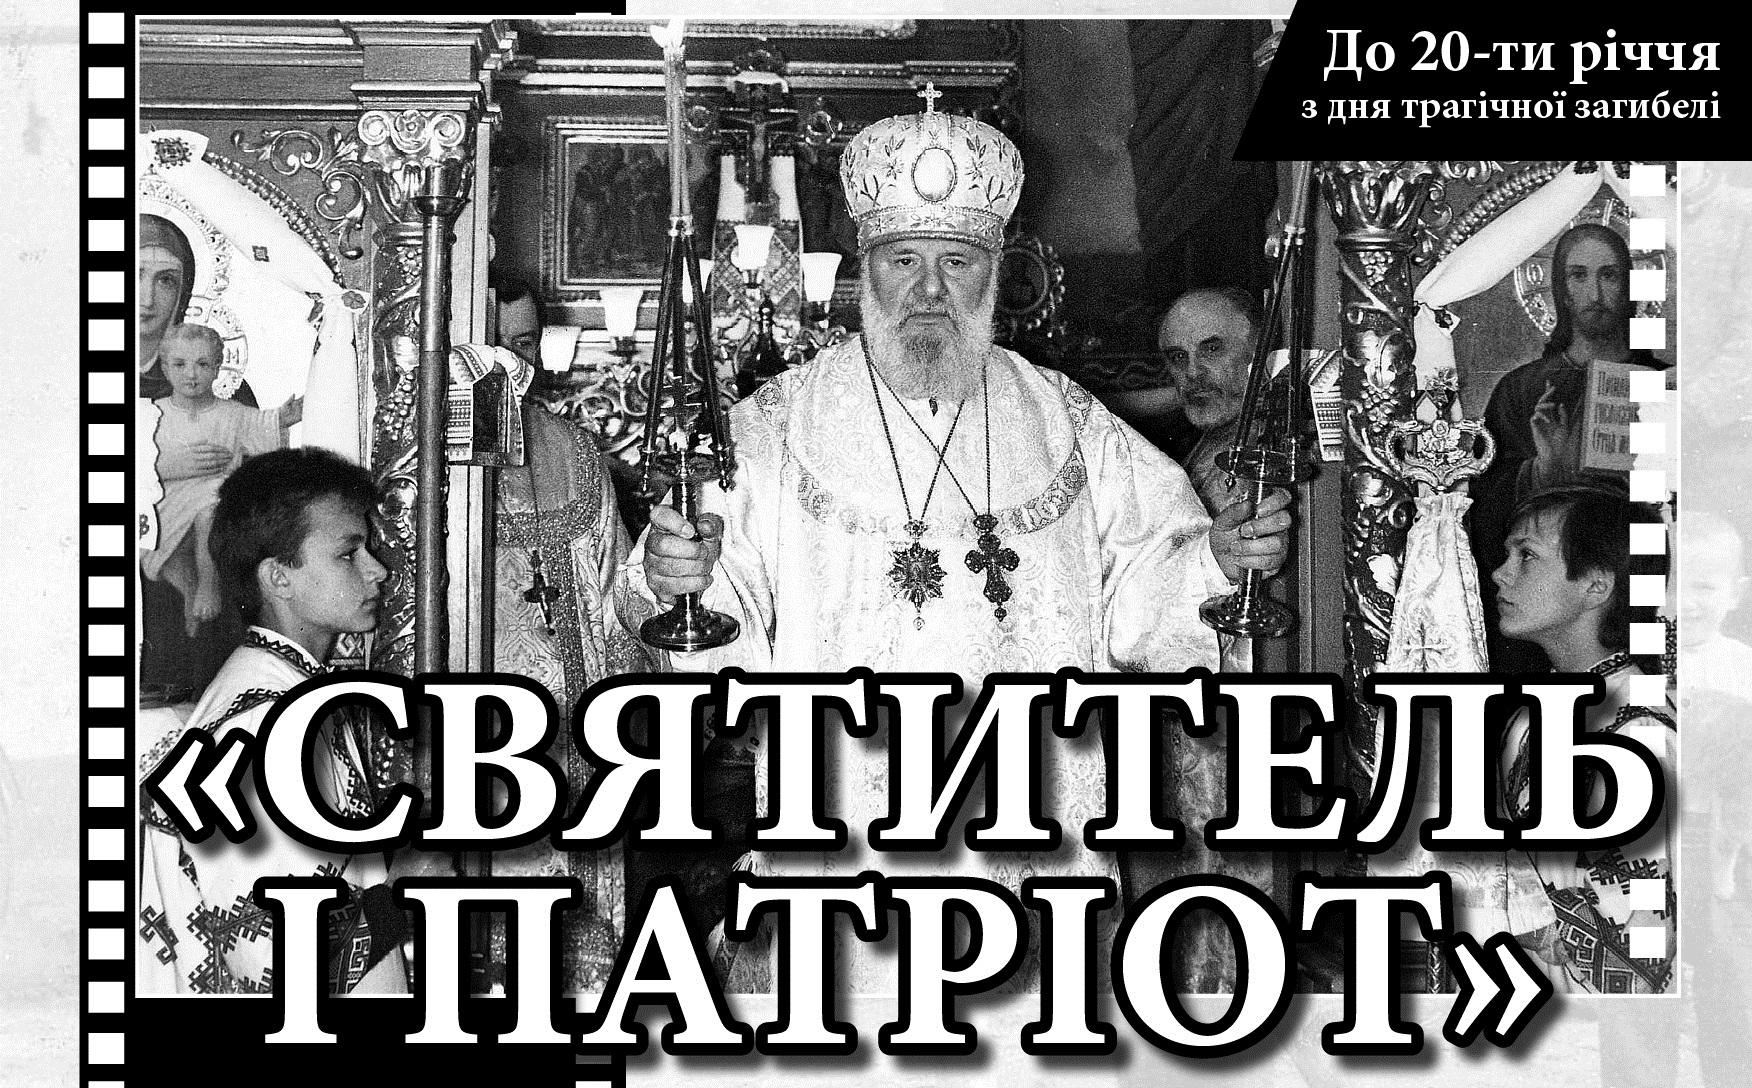 Сьогодні У Тернополі показ документального фільму про Бога, віру і героїв (ТРЕЙЛЕР)